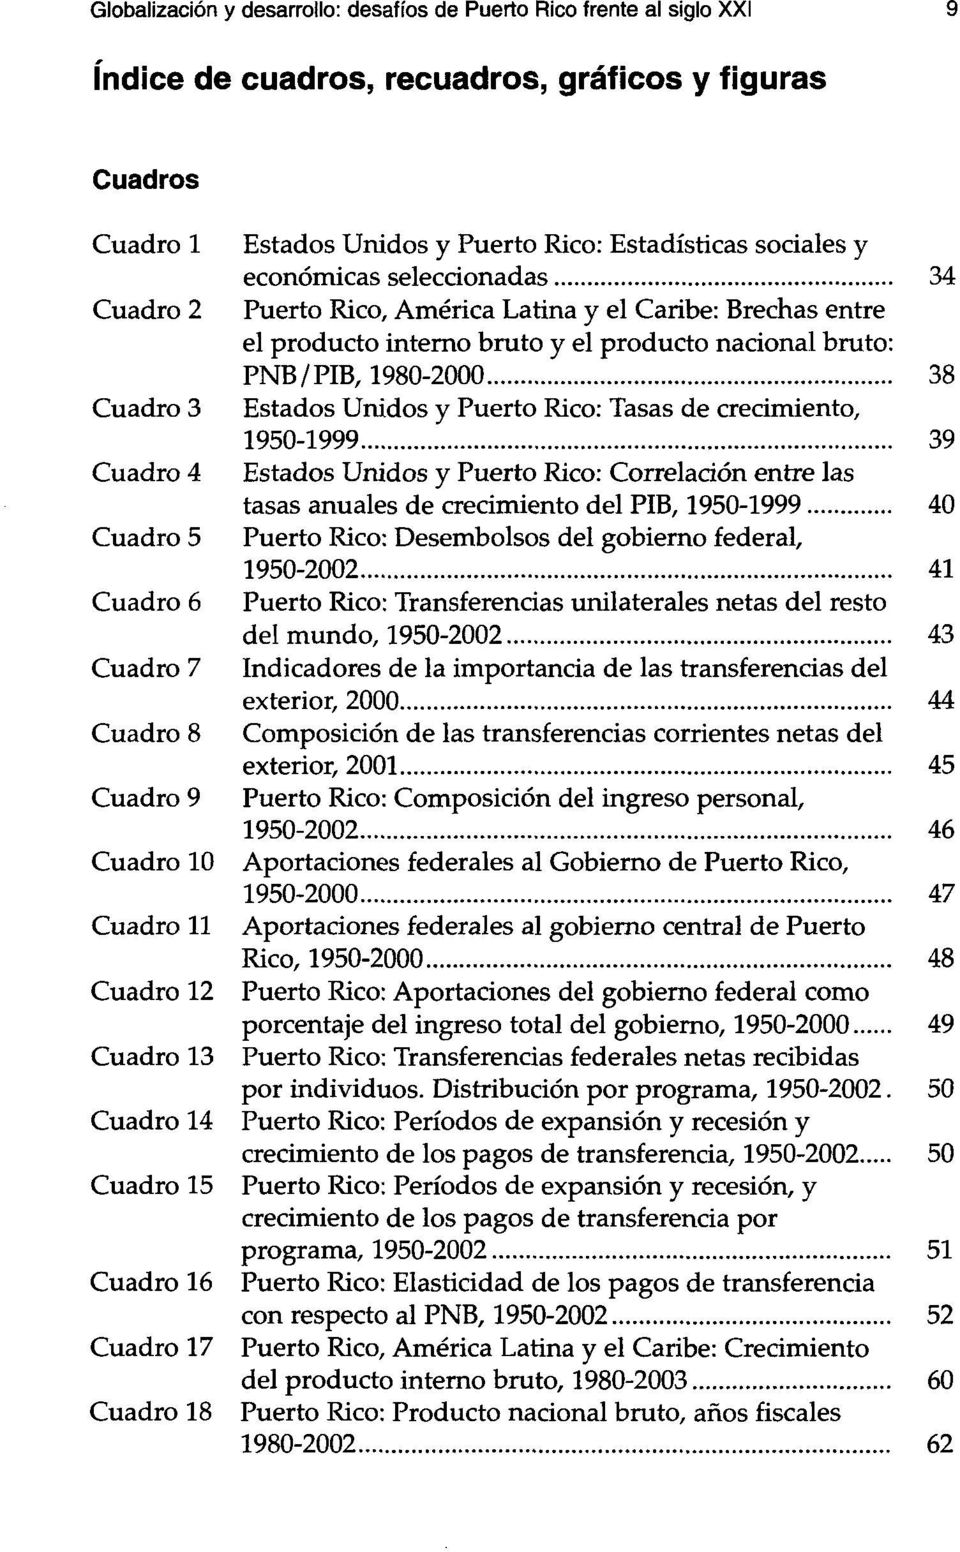 .. 34 Puerto Rico, América Latina y el Caribe: Brechas entre el producto interno bruto y el producto nacional bruto: PNB/PIB, 1980-2000.